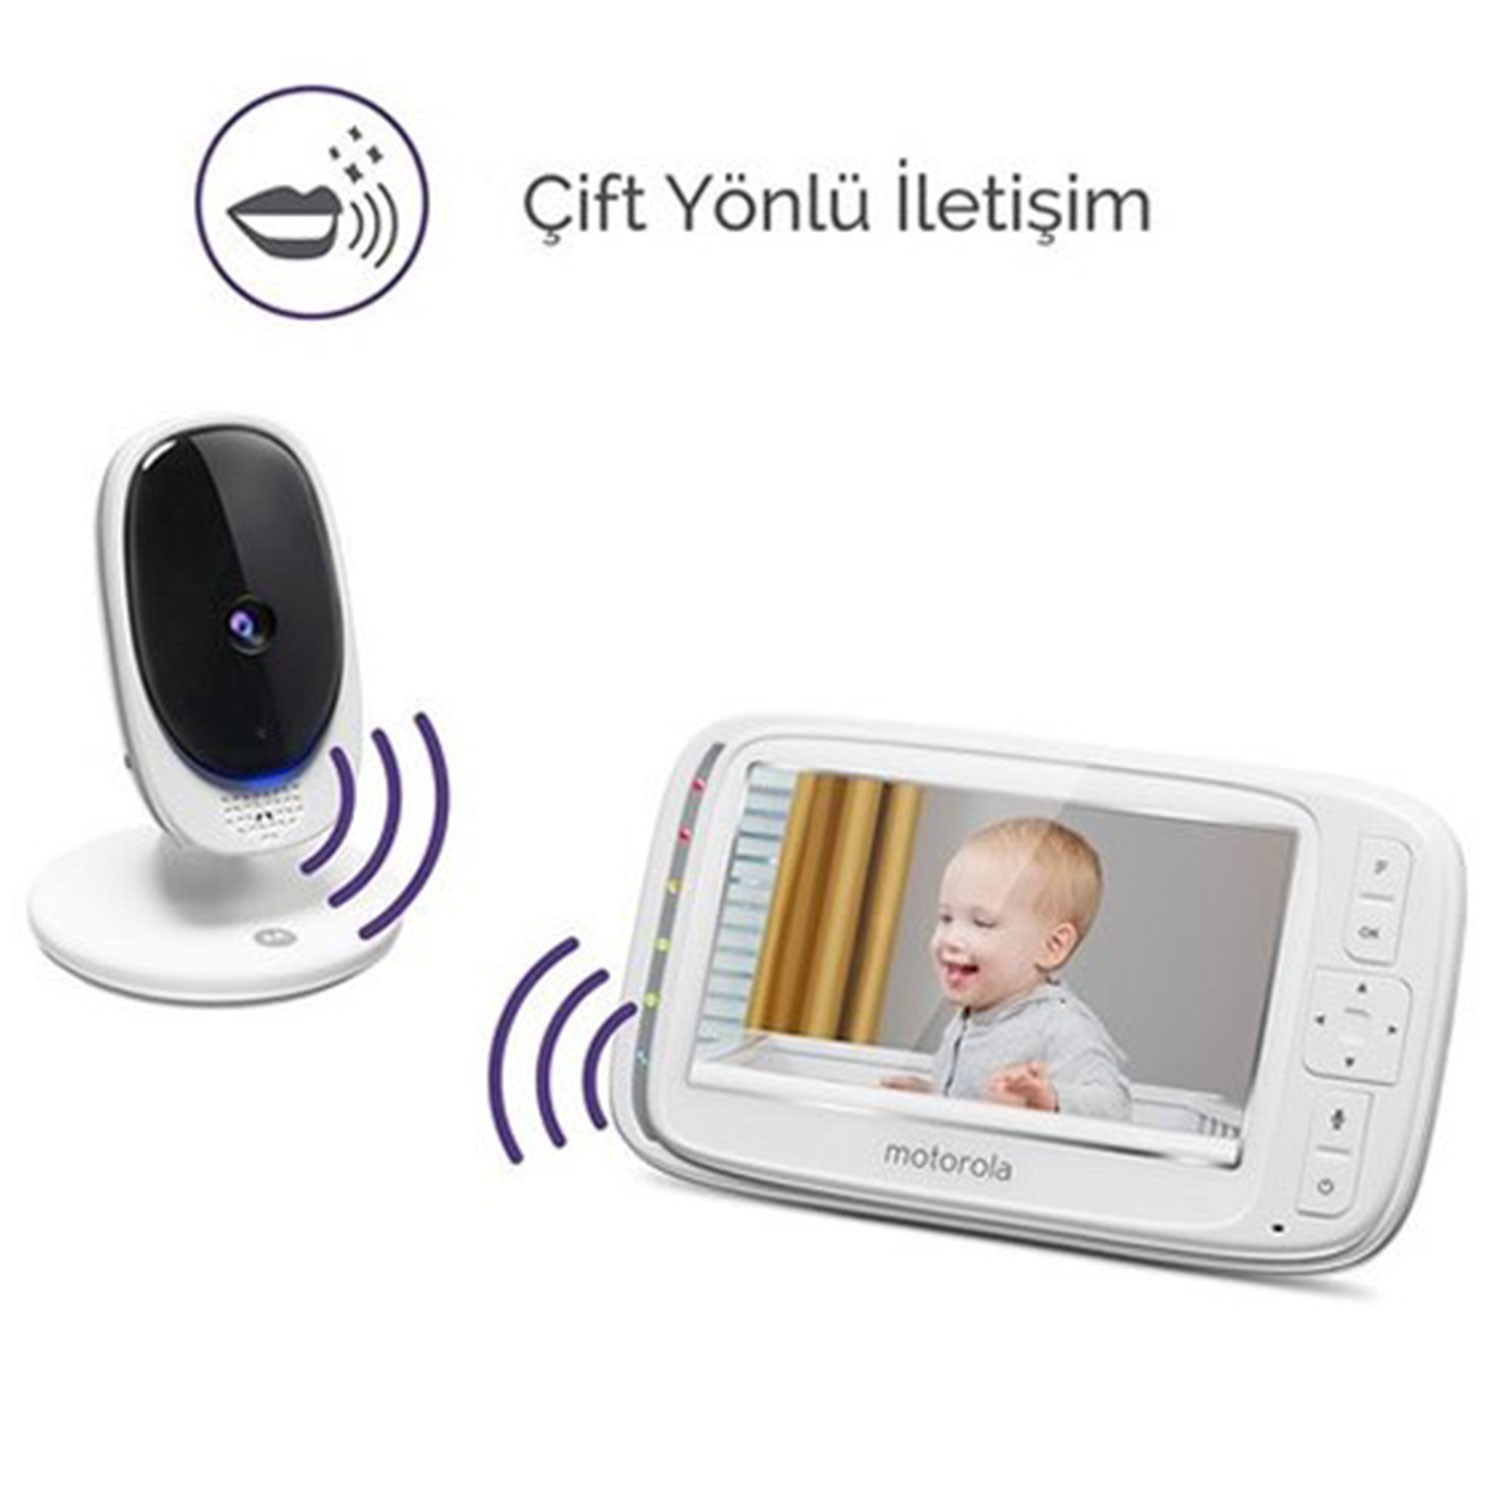 Motorola Comfort50 5 İnç Lcd Ekran Dijital Bebek Kamerası 